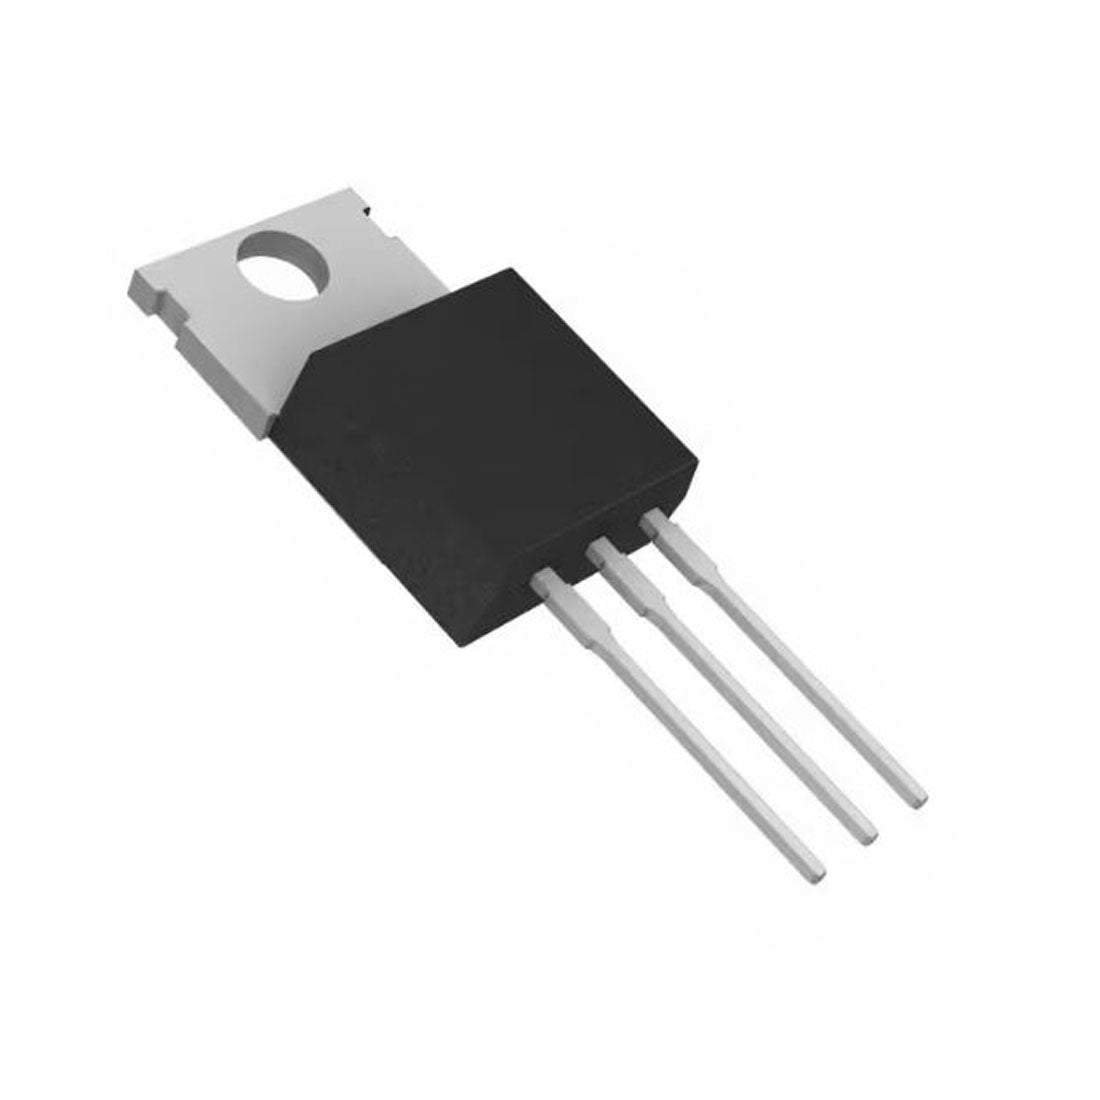 BYV32-200 Componente elettronico, circuito integrato, transistor, 3 contatti